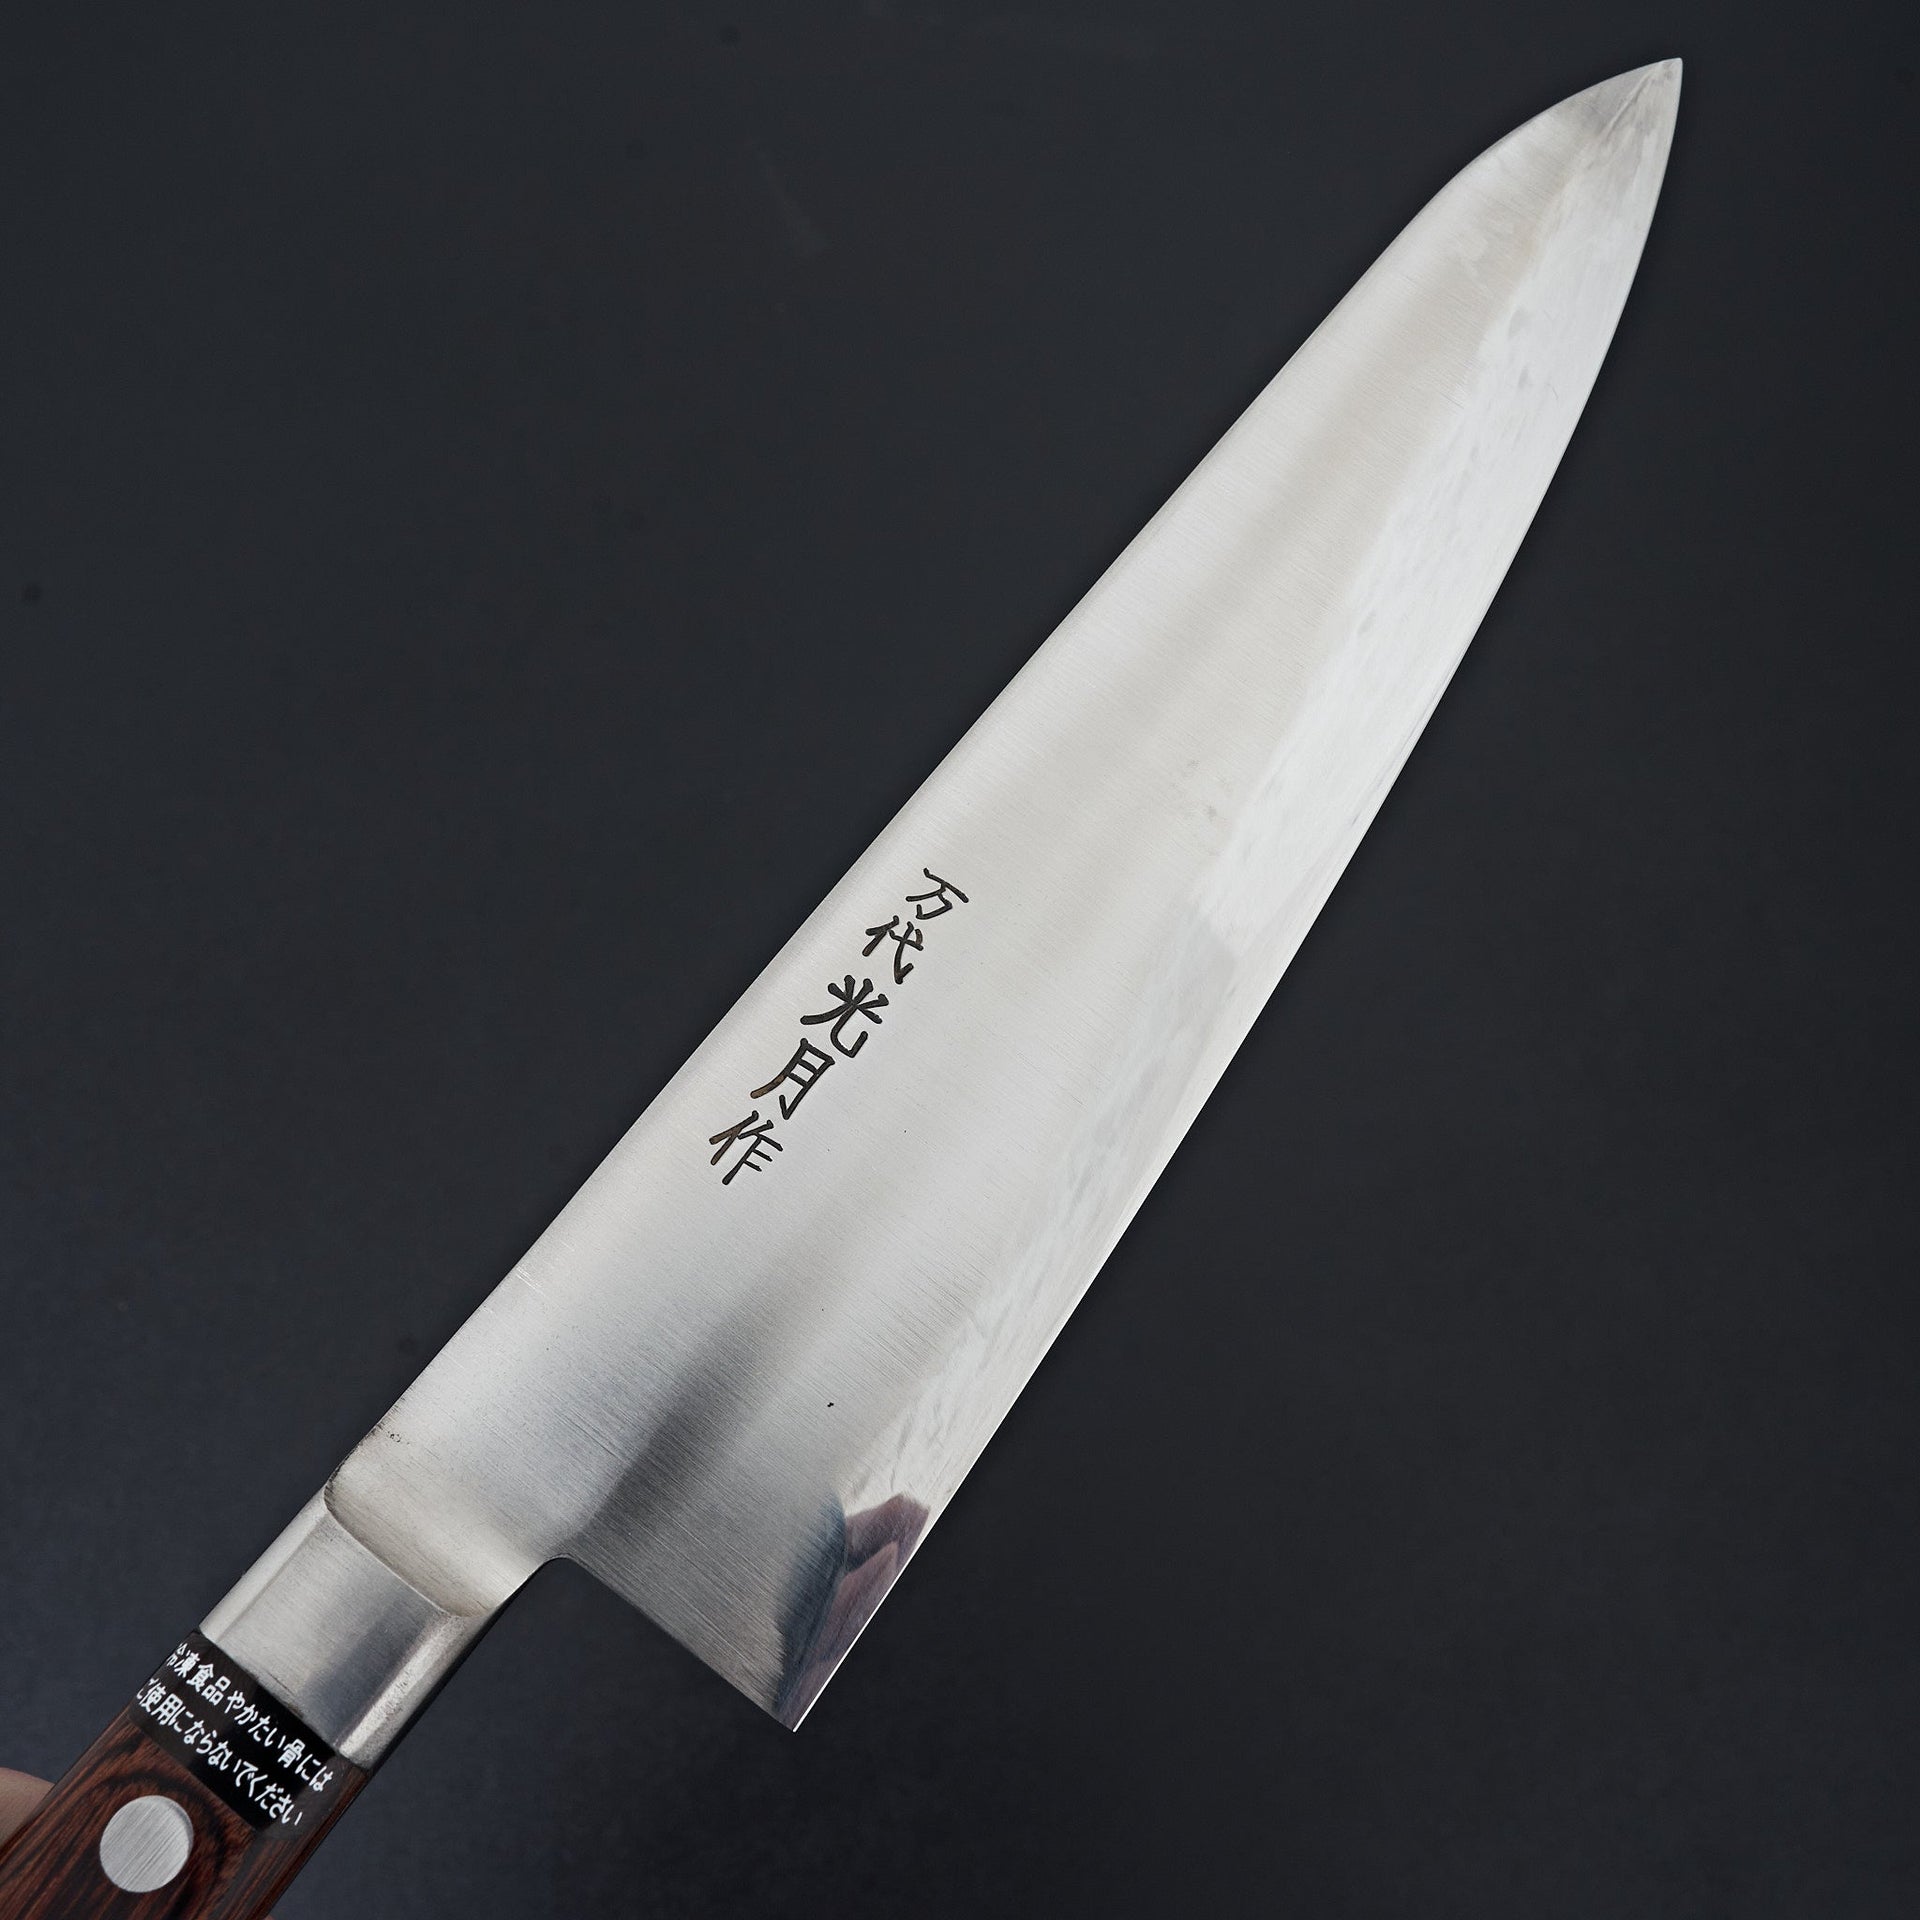 Kogetsu Mandai Stainless Gyuto 240mm Imitation Mahogany Handle-Knife-Kogetsu-Carbon Knife Co